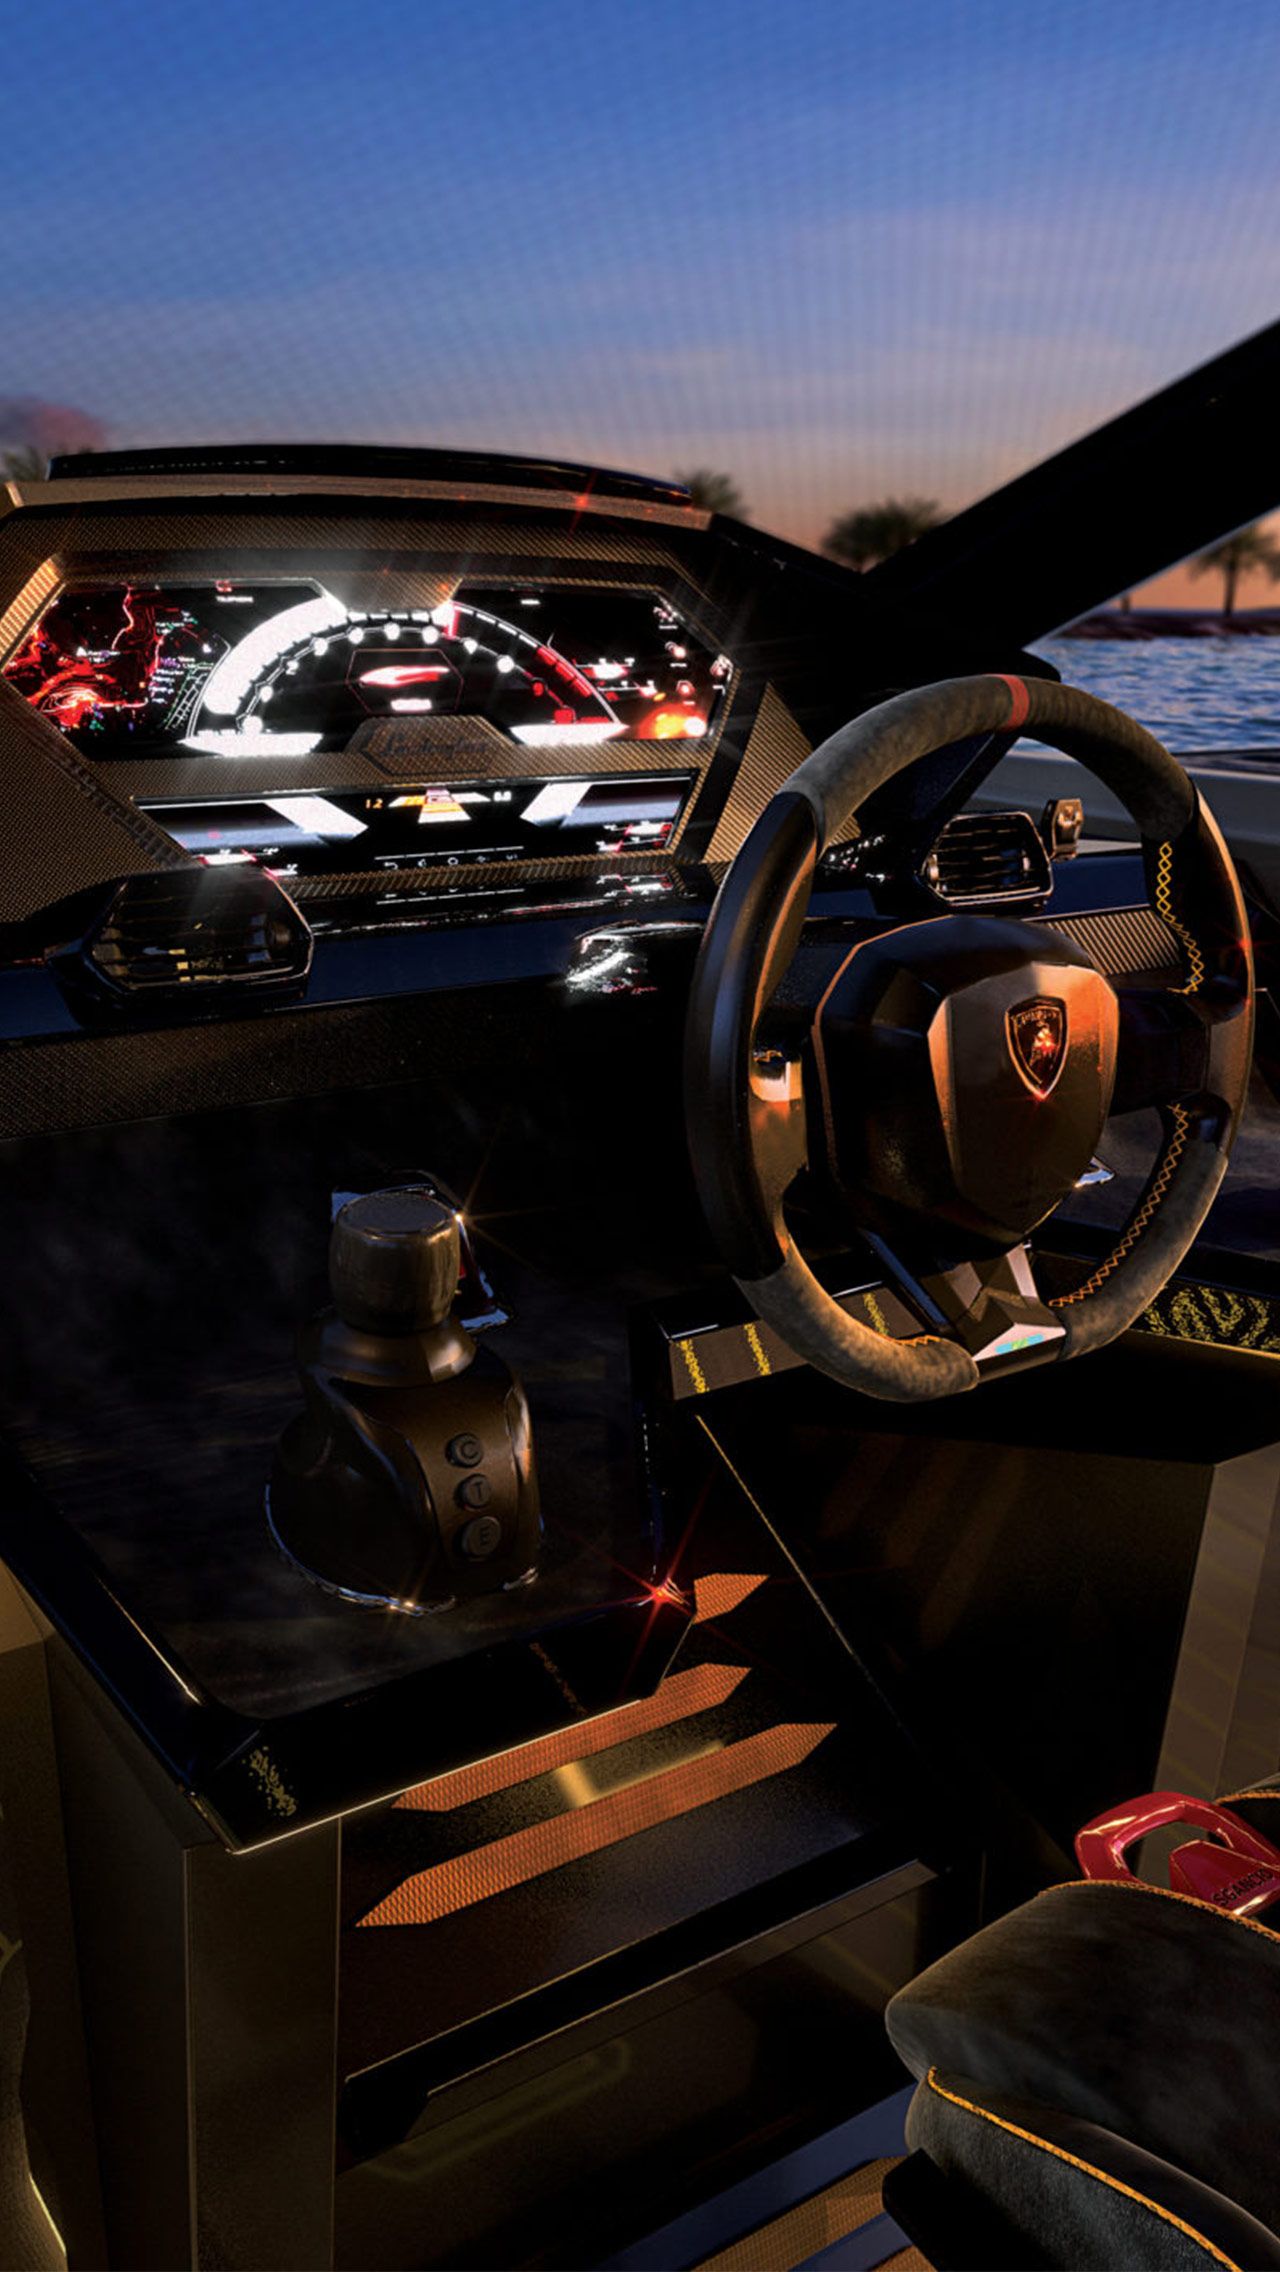 Также имеется приборная панель, созданная на основе гибридного спорткара Lamborghini, что резко контрастирует с типичными панелями, используемыми на яхтах.